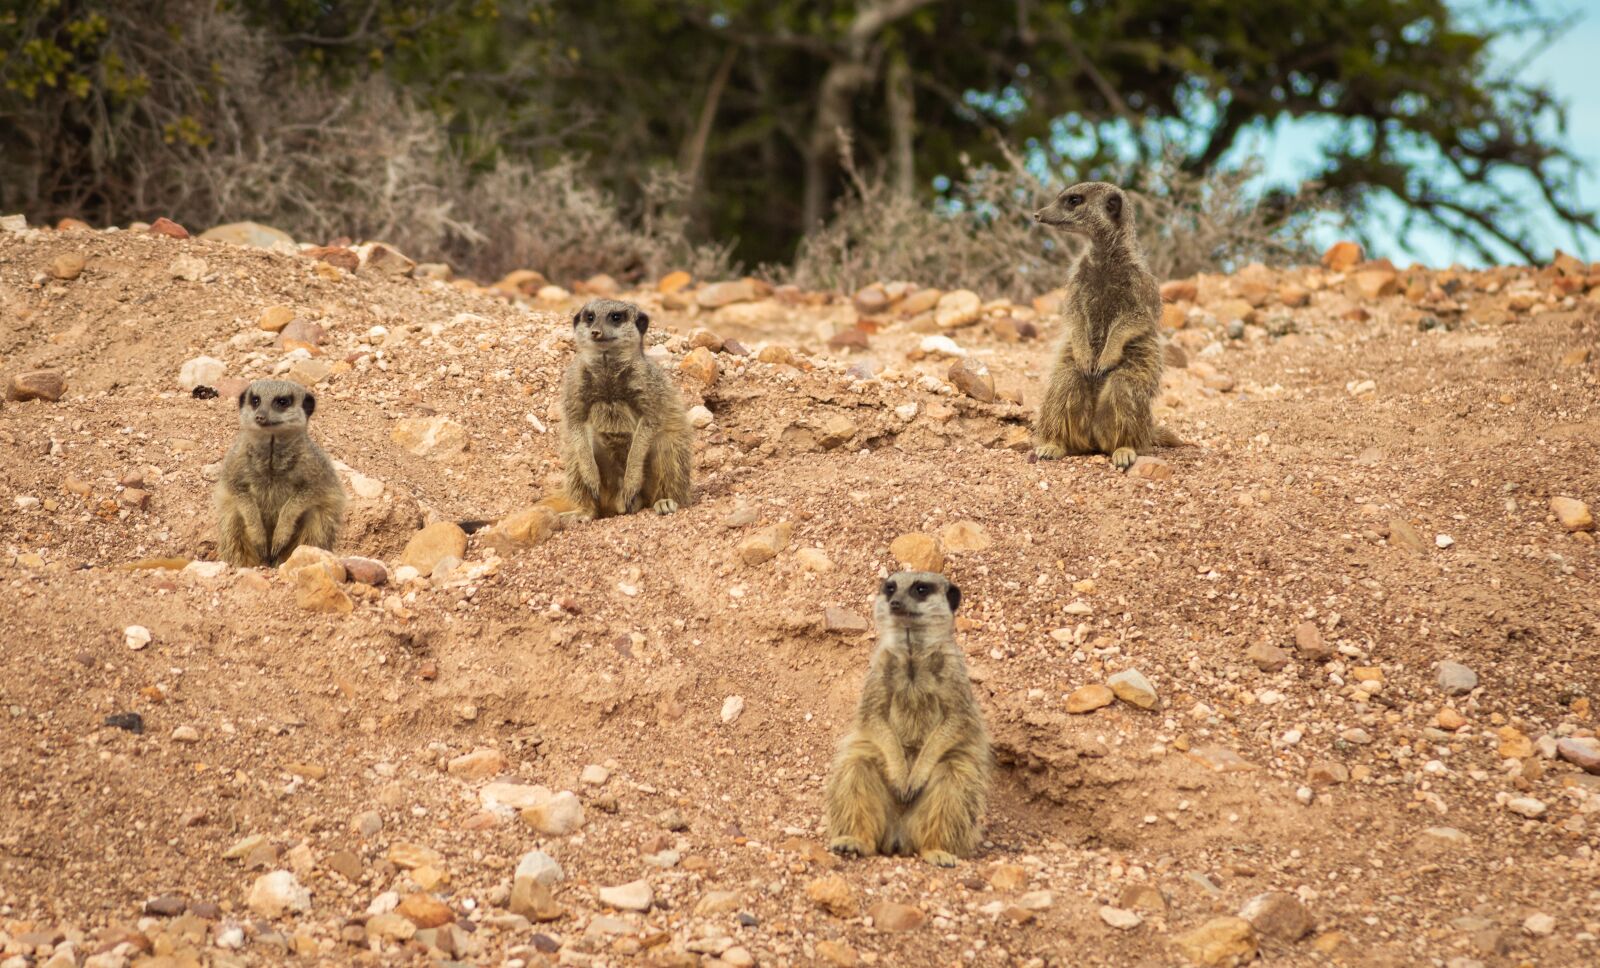 Nikon D3200 sample photo. Africa, meerkat, animal photography